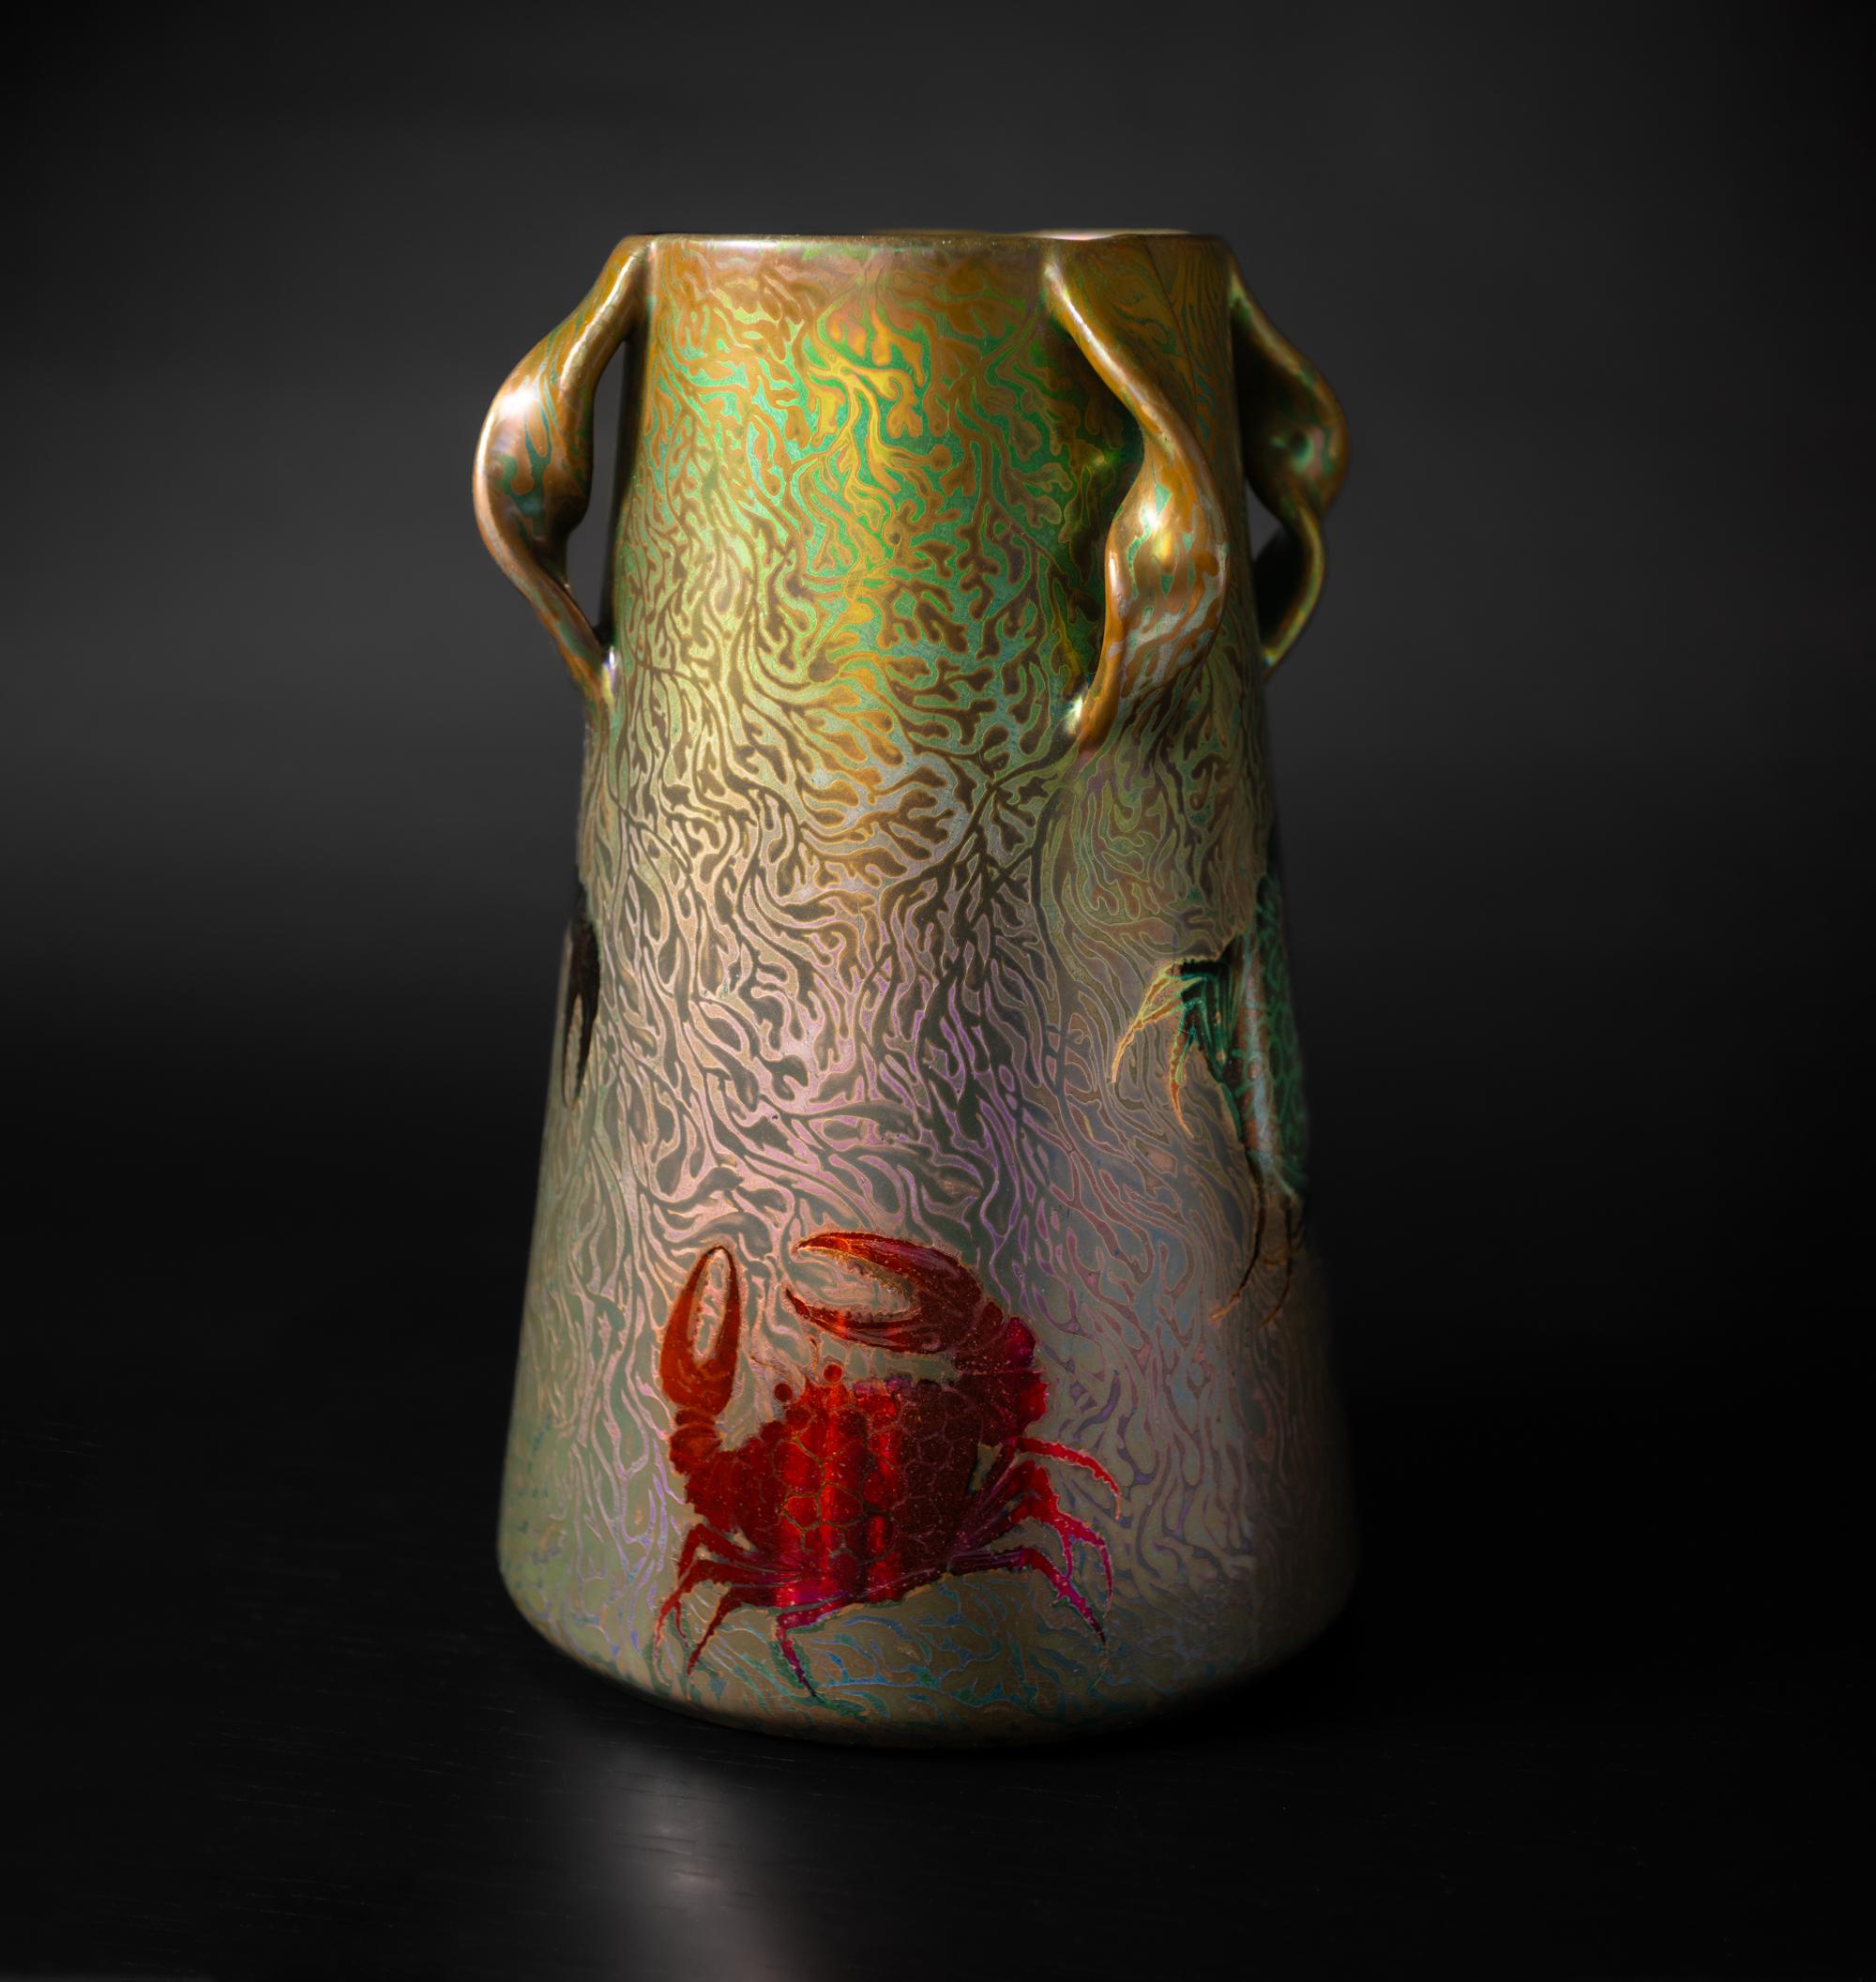 Die Begegnung mit den glasierten Keramiken von Massier ist eine Reise in die Farben der Säure, eine Erkundung, die zum Nachdenken anregt und Transparenz erfordert. Clement Massier, der in der zweiten Hälfte des 19. Jahrhunderts in eine Töpferfamilie